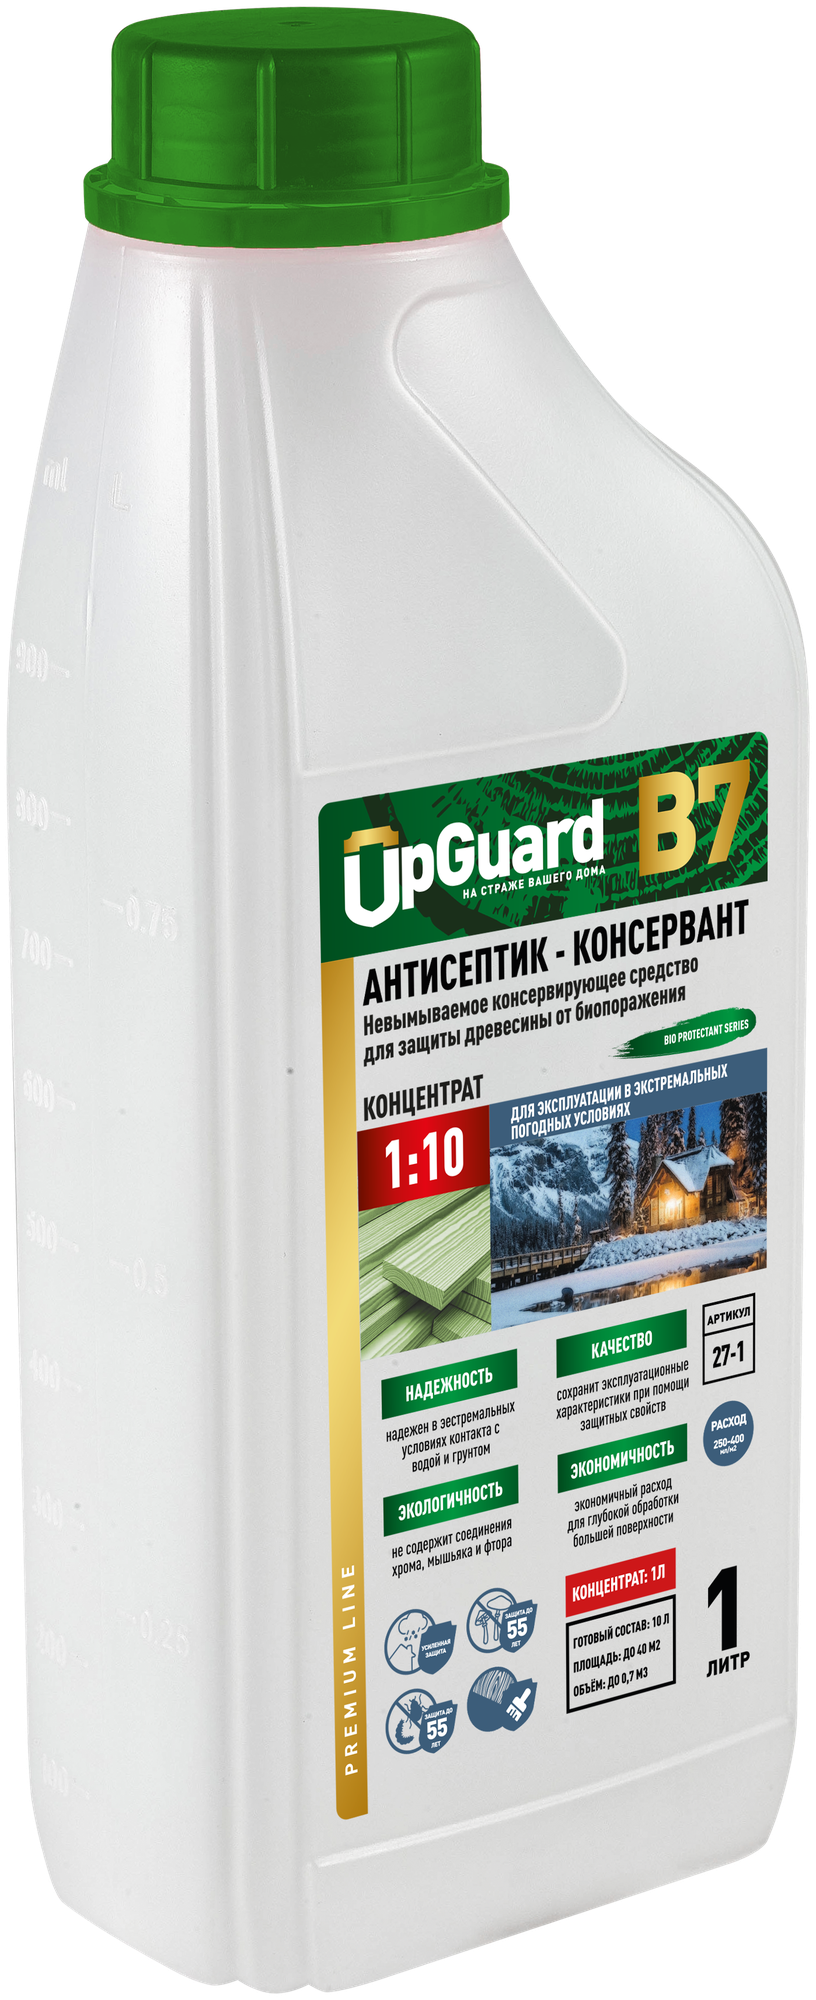 UpGUARD B7 - 1л, Концентрат 1:10. Невымываемый антисептик-консервант для защиты древесины в экстремальных погодных условиях сроком до 55 лет.